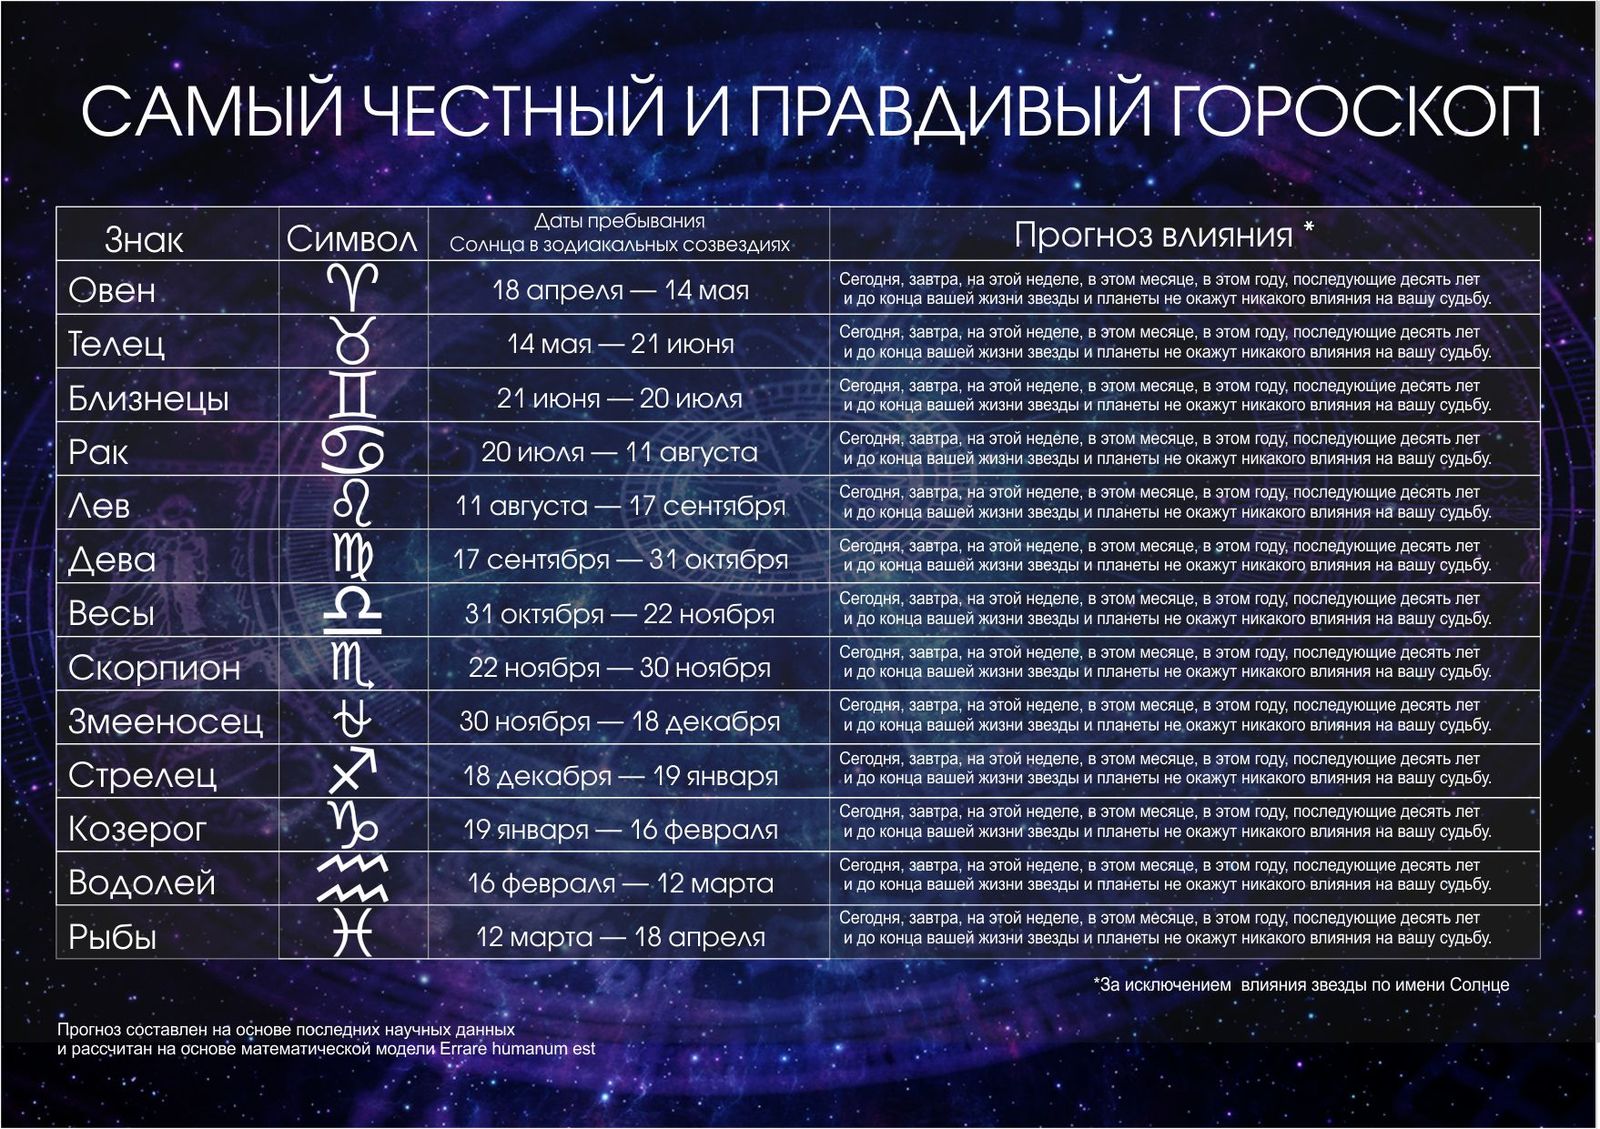 Даты гороскопа по знакам. Знаки зодиака даты рождения таблица. Даты знаков зодиака таблица. Гороскоп даты. Гороскоп по датам.